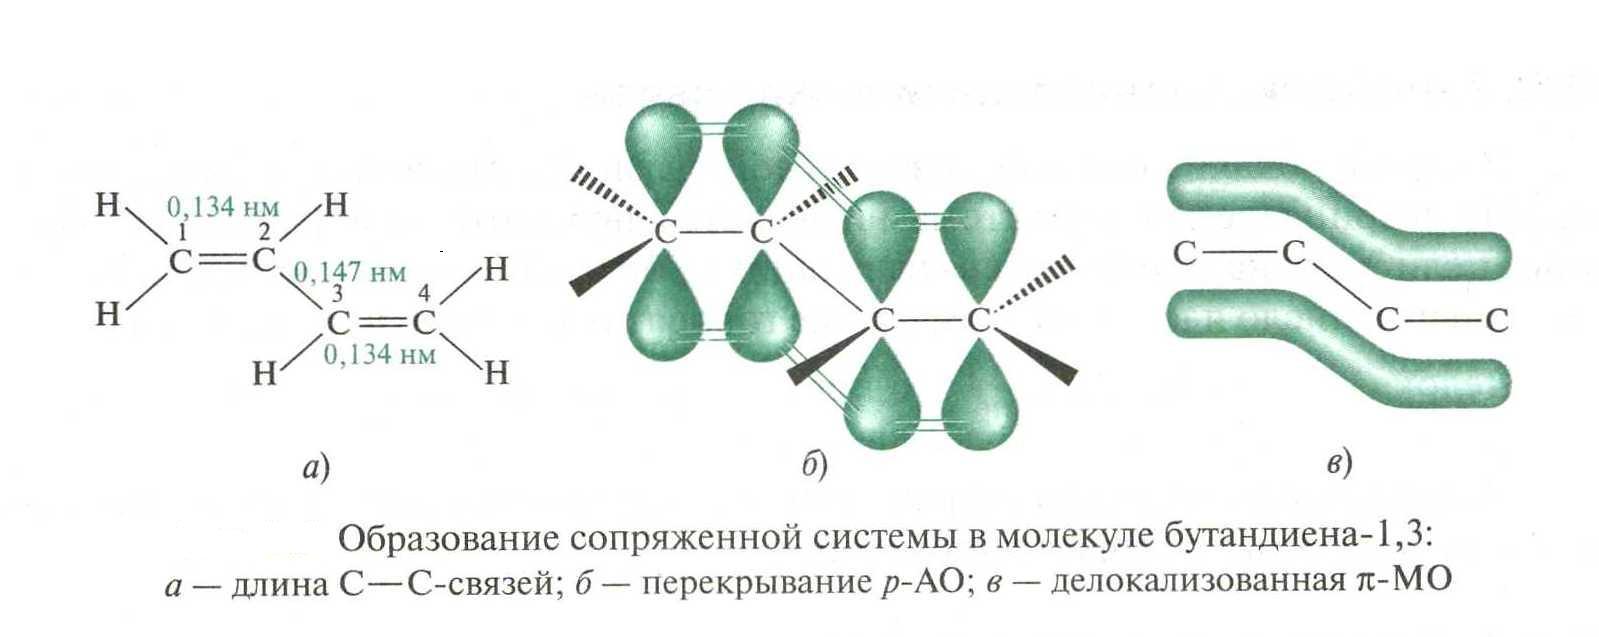 Бутадиен 1 2 гибридизация. Электронное строение молекулы бутадиена-1.3. Строение молекулы бутадиена 1.3. Сопряженные системы бутадиен 1 3. Система сопряженных связей в молекулах.